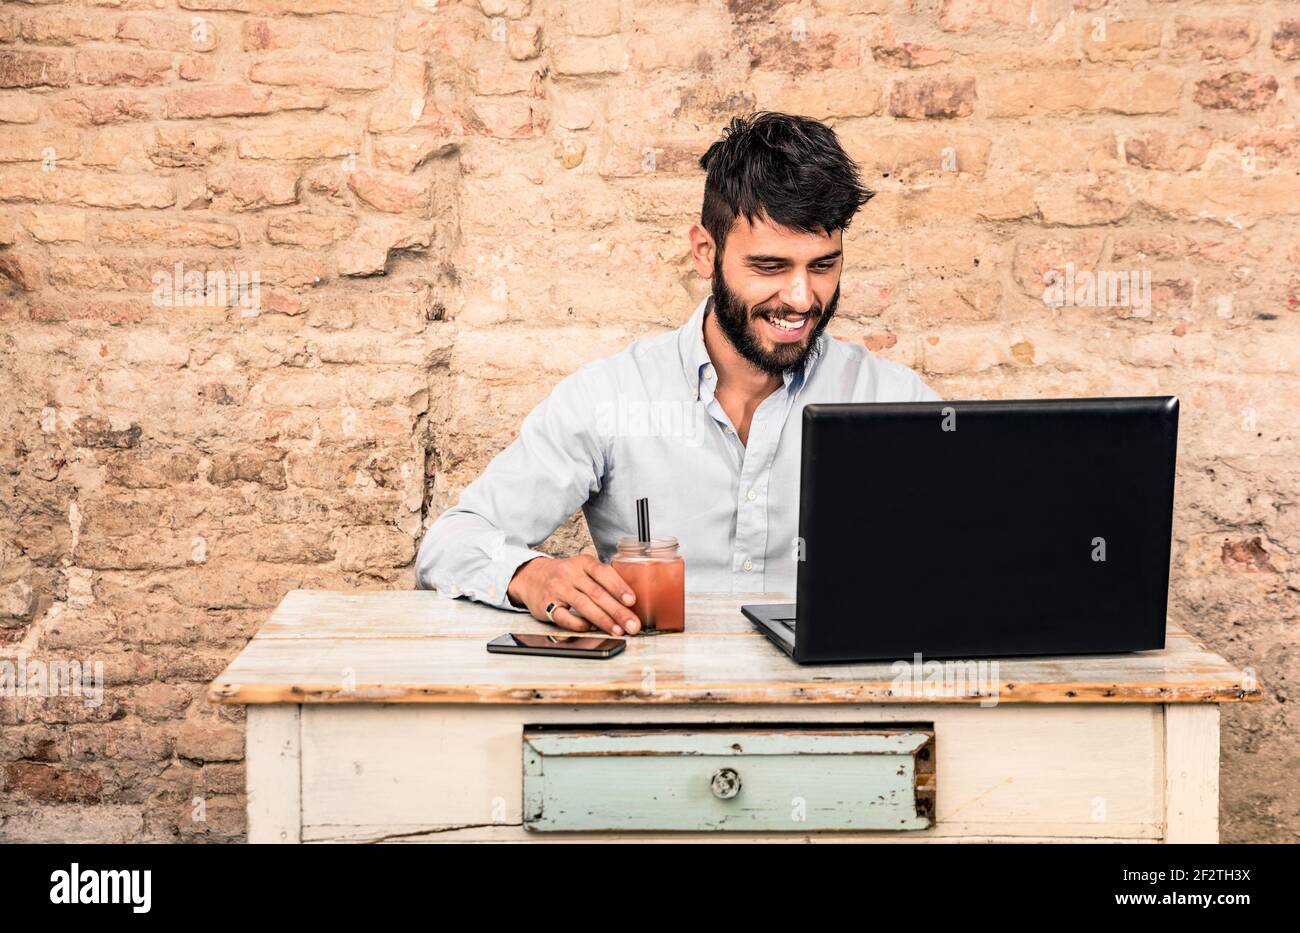 Jeune homme taille basse avec moustache assis au bureau vintage avec ordinateur portable dans grunge bureau alternatif - concept de début travailler en entreprise Banque D'Images